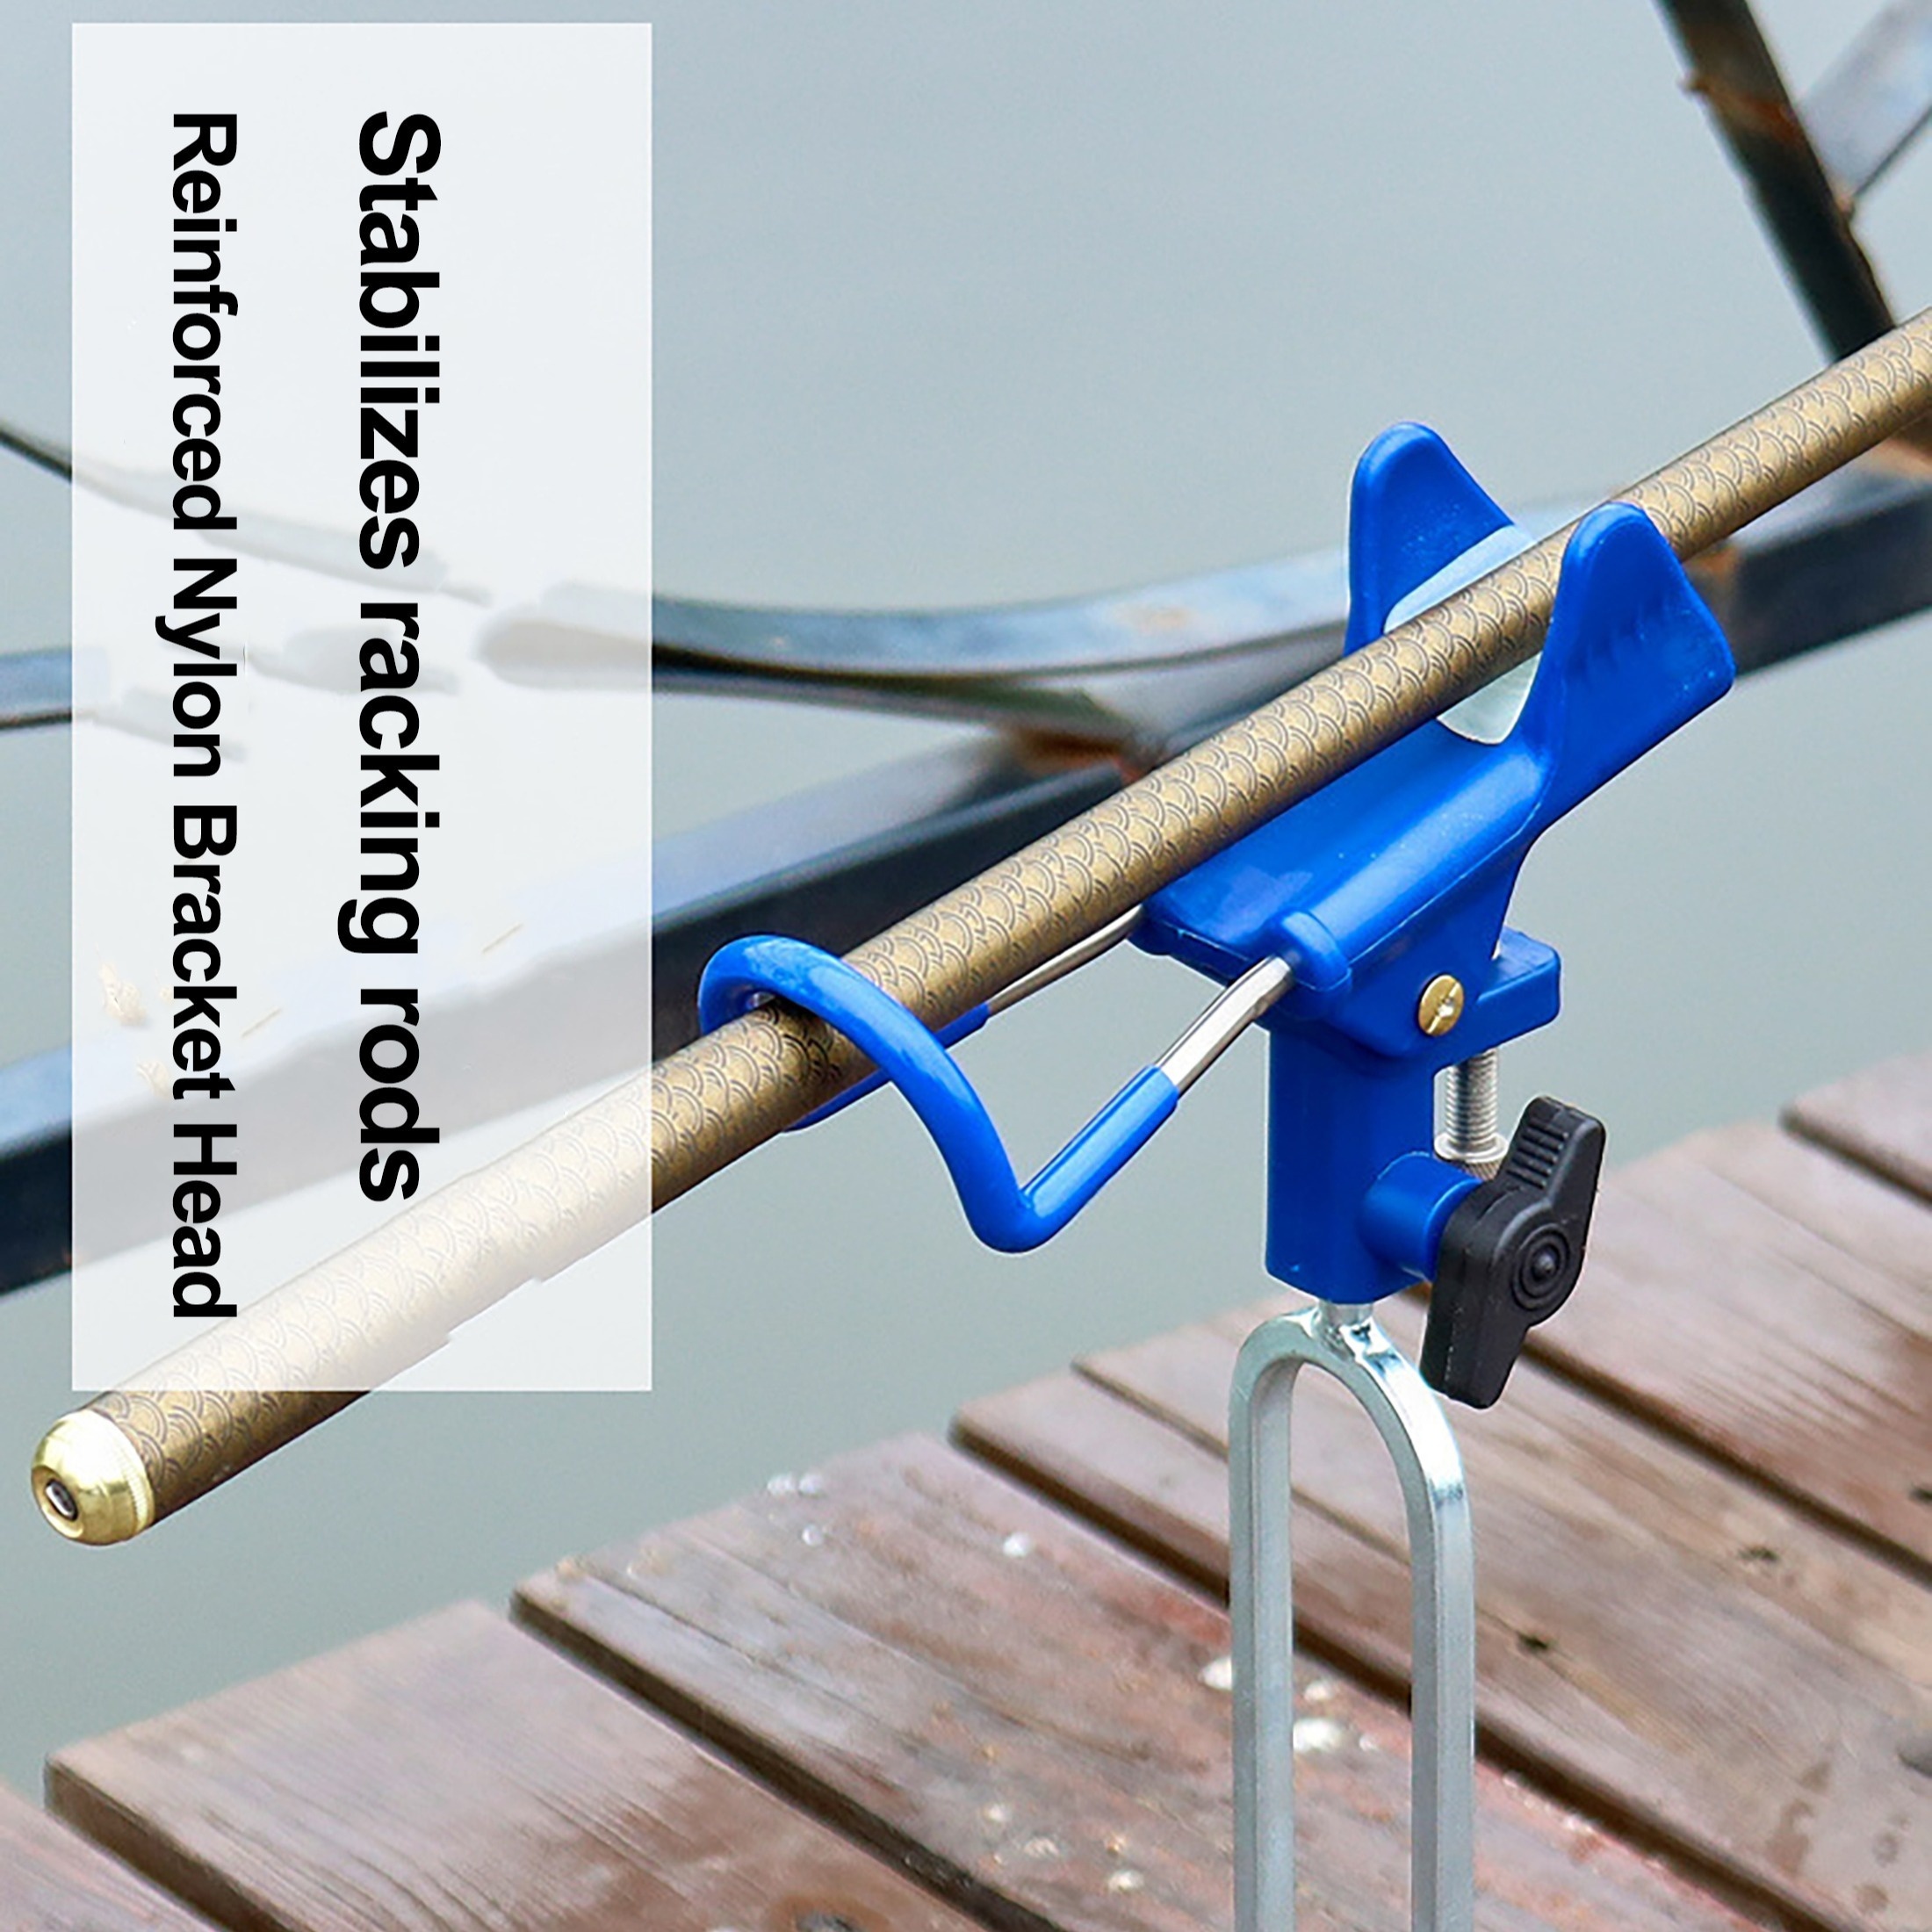  Fishing Rod Racks - Floor Mount / Fishing Rod Racks